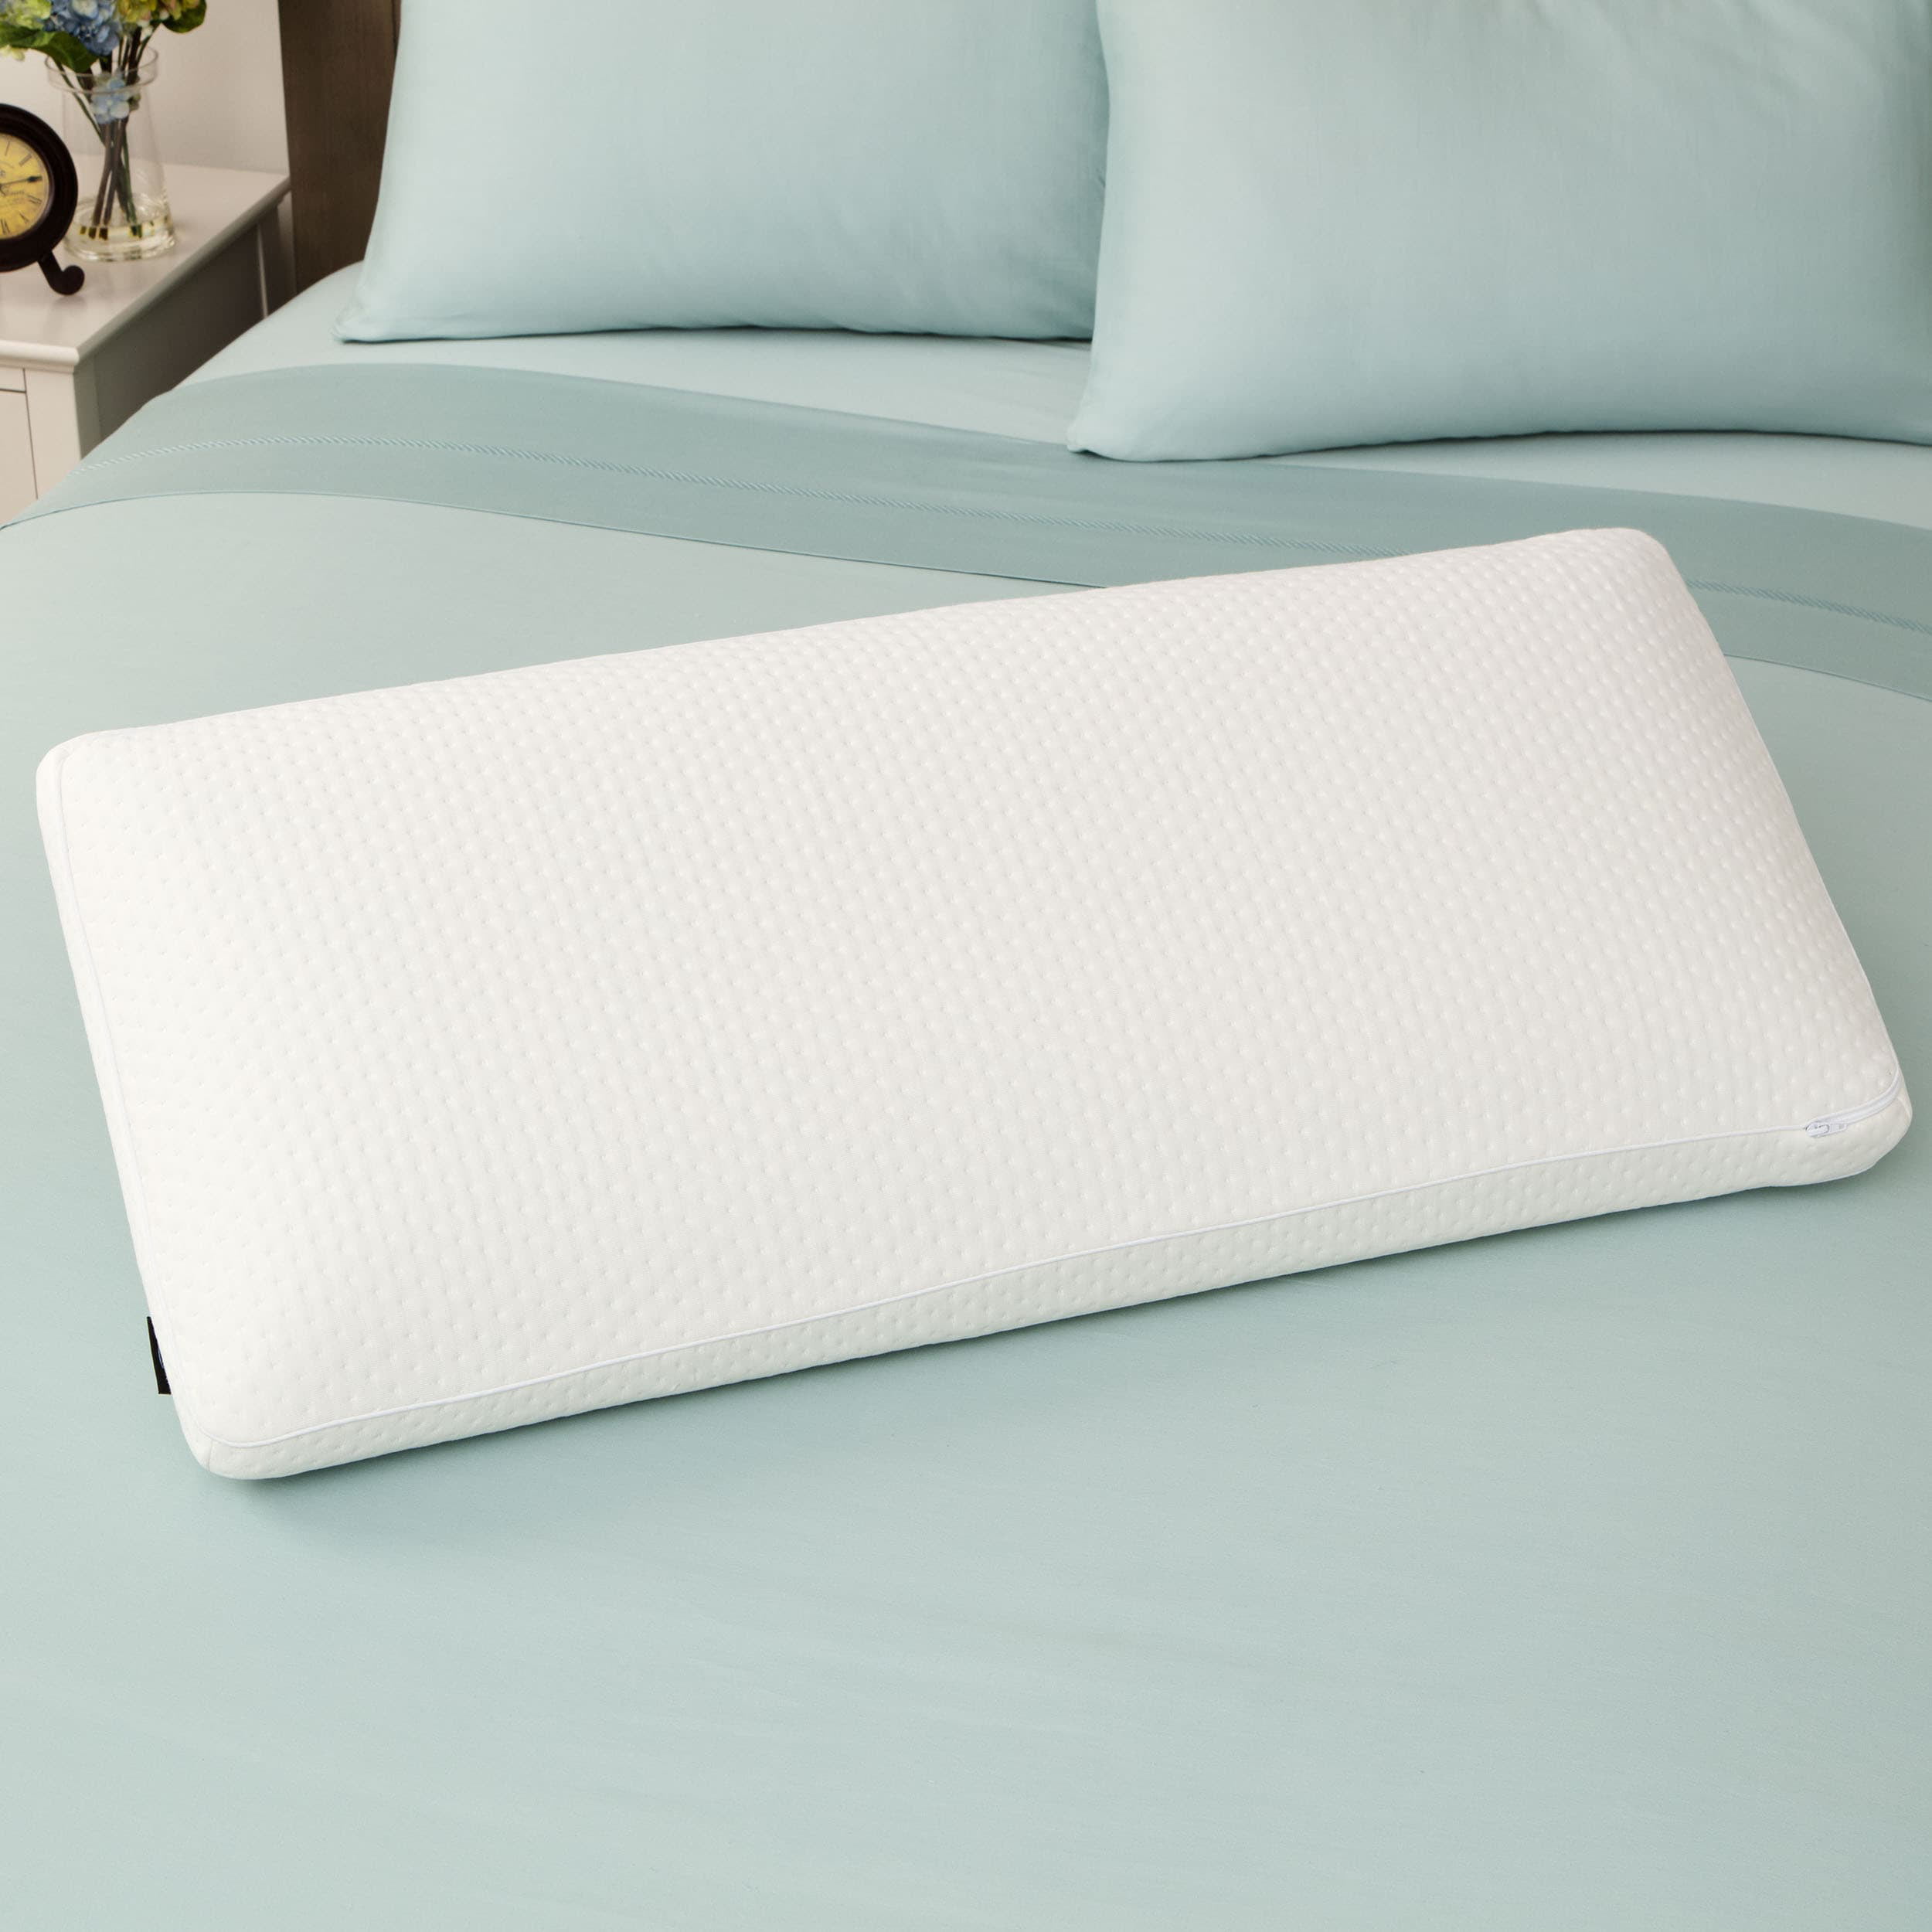 SwissLux Euro Style Luxury King-size Memory Foam Pillow - White ...